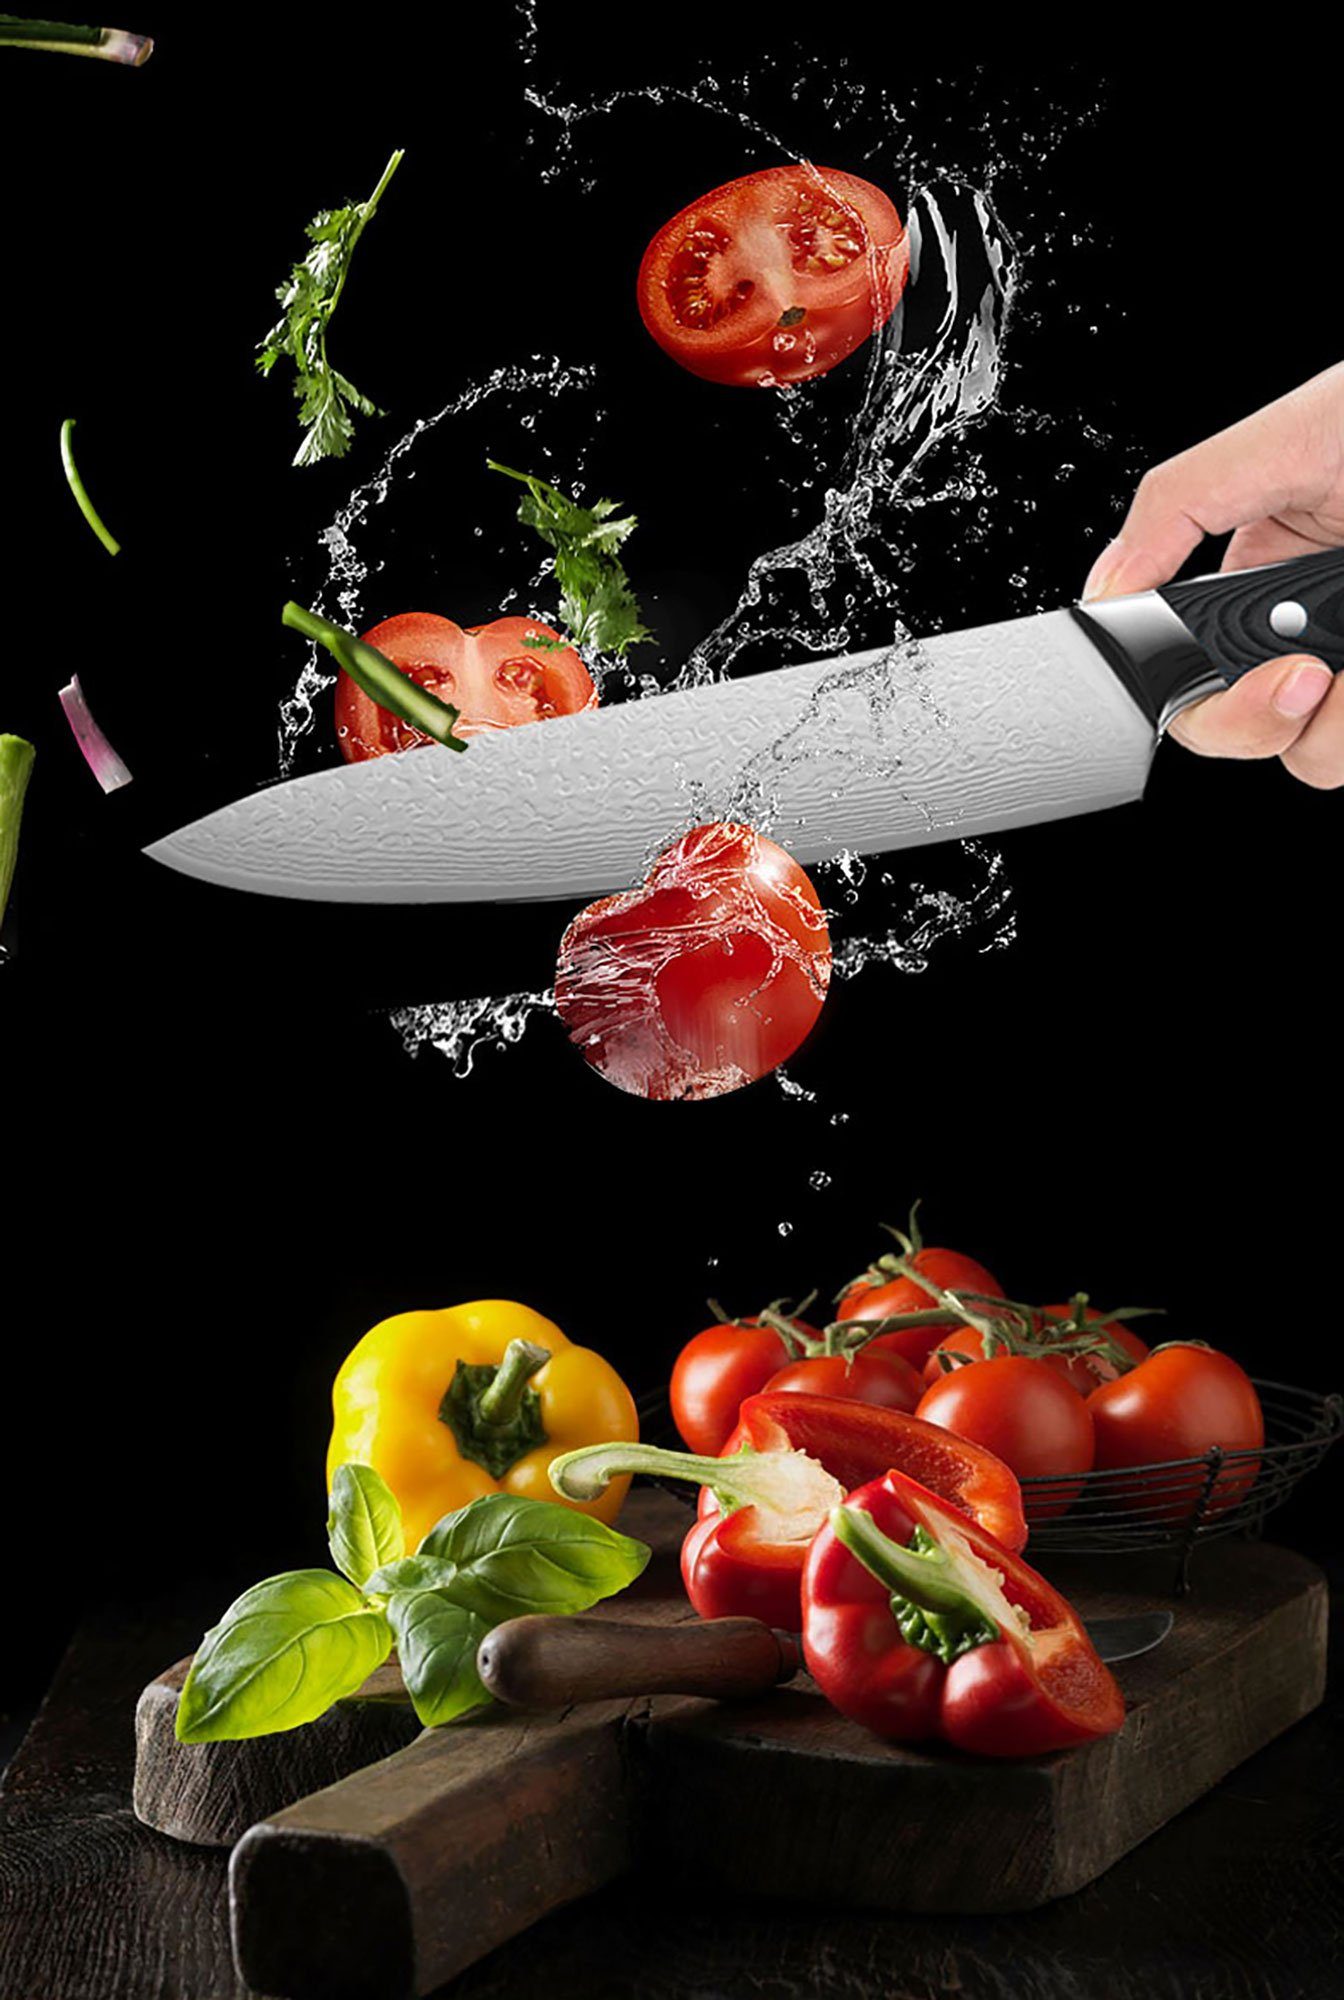 Damaskus (nein, Set 1-tlg) Messer-Set Knife Kochmesser and Messer Bornig Ausbeinmesser Chef Muxel und